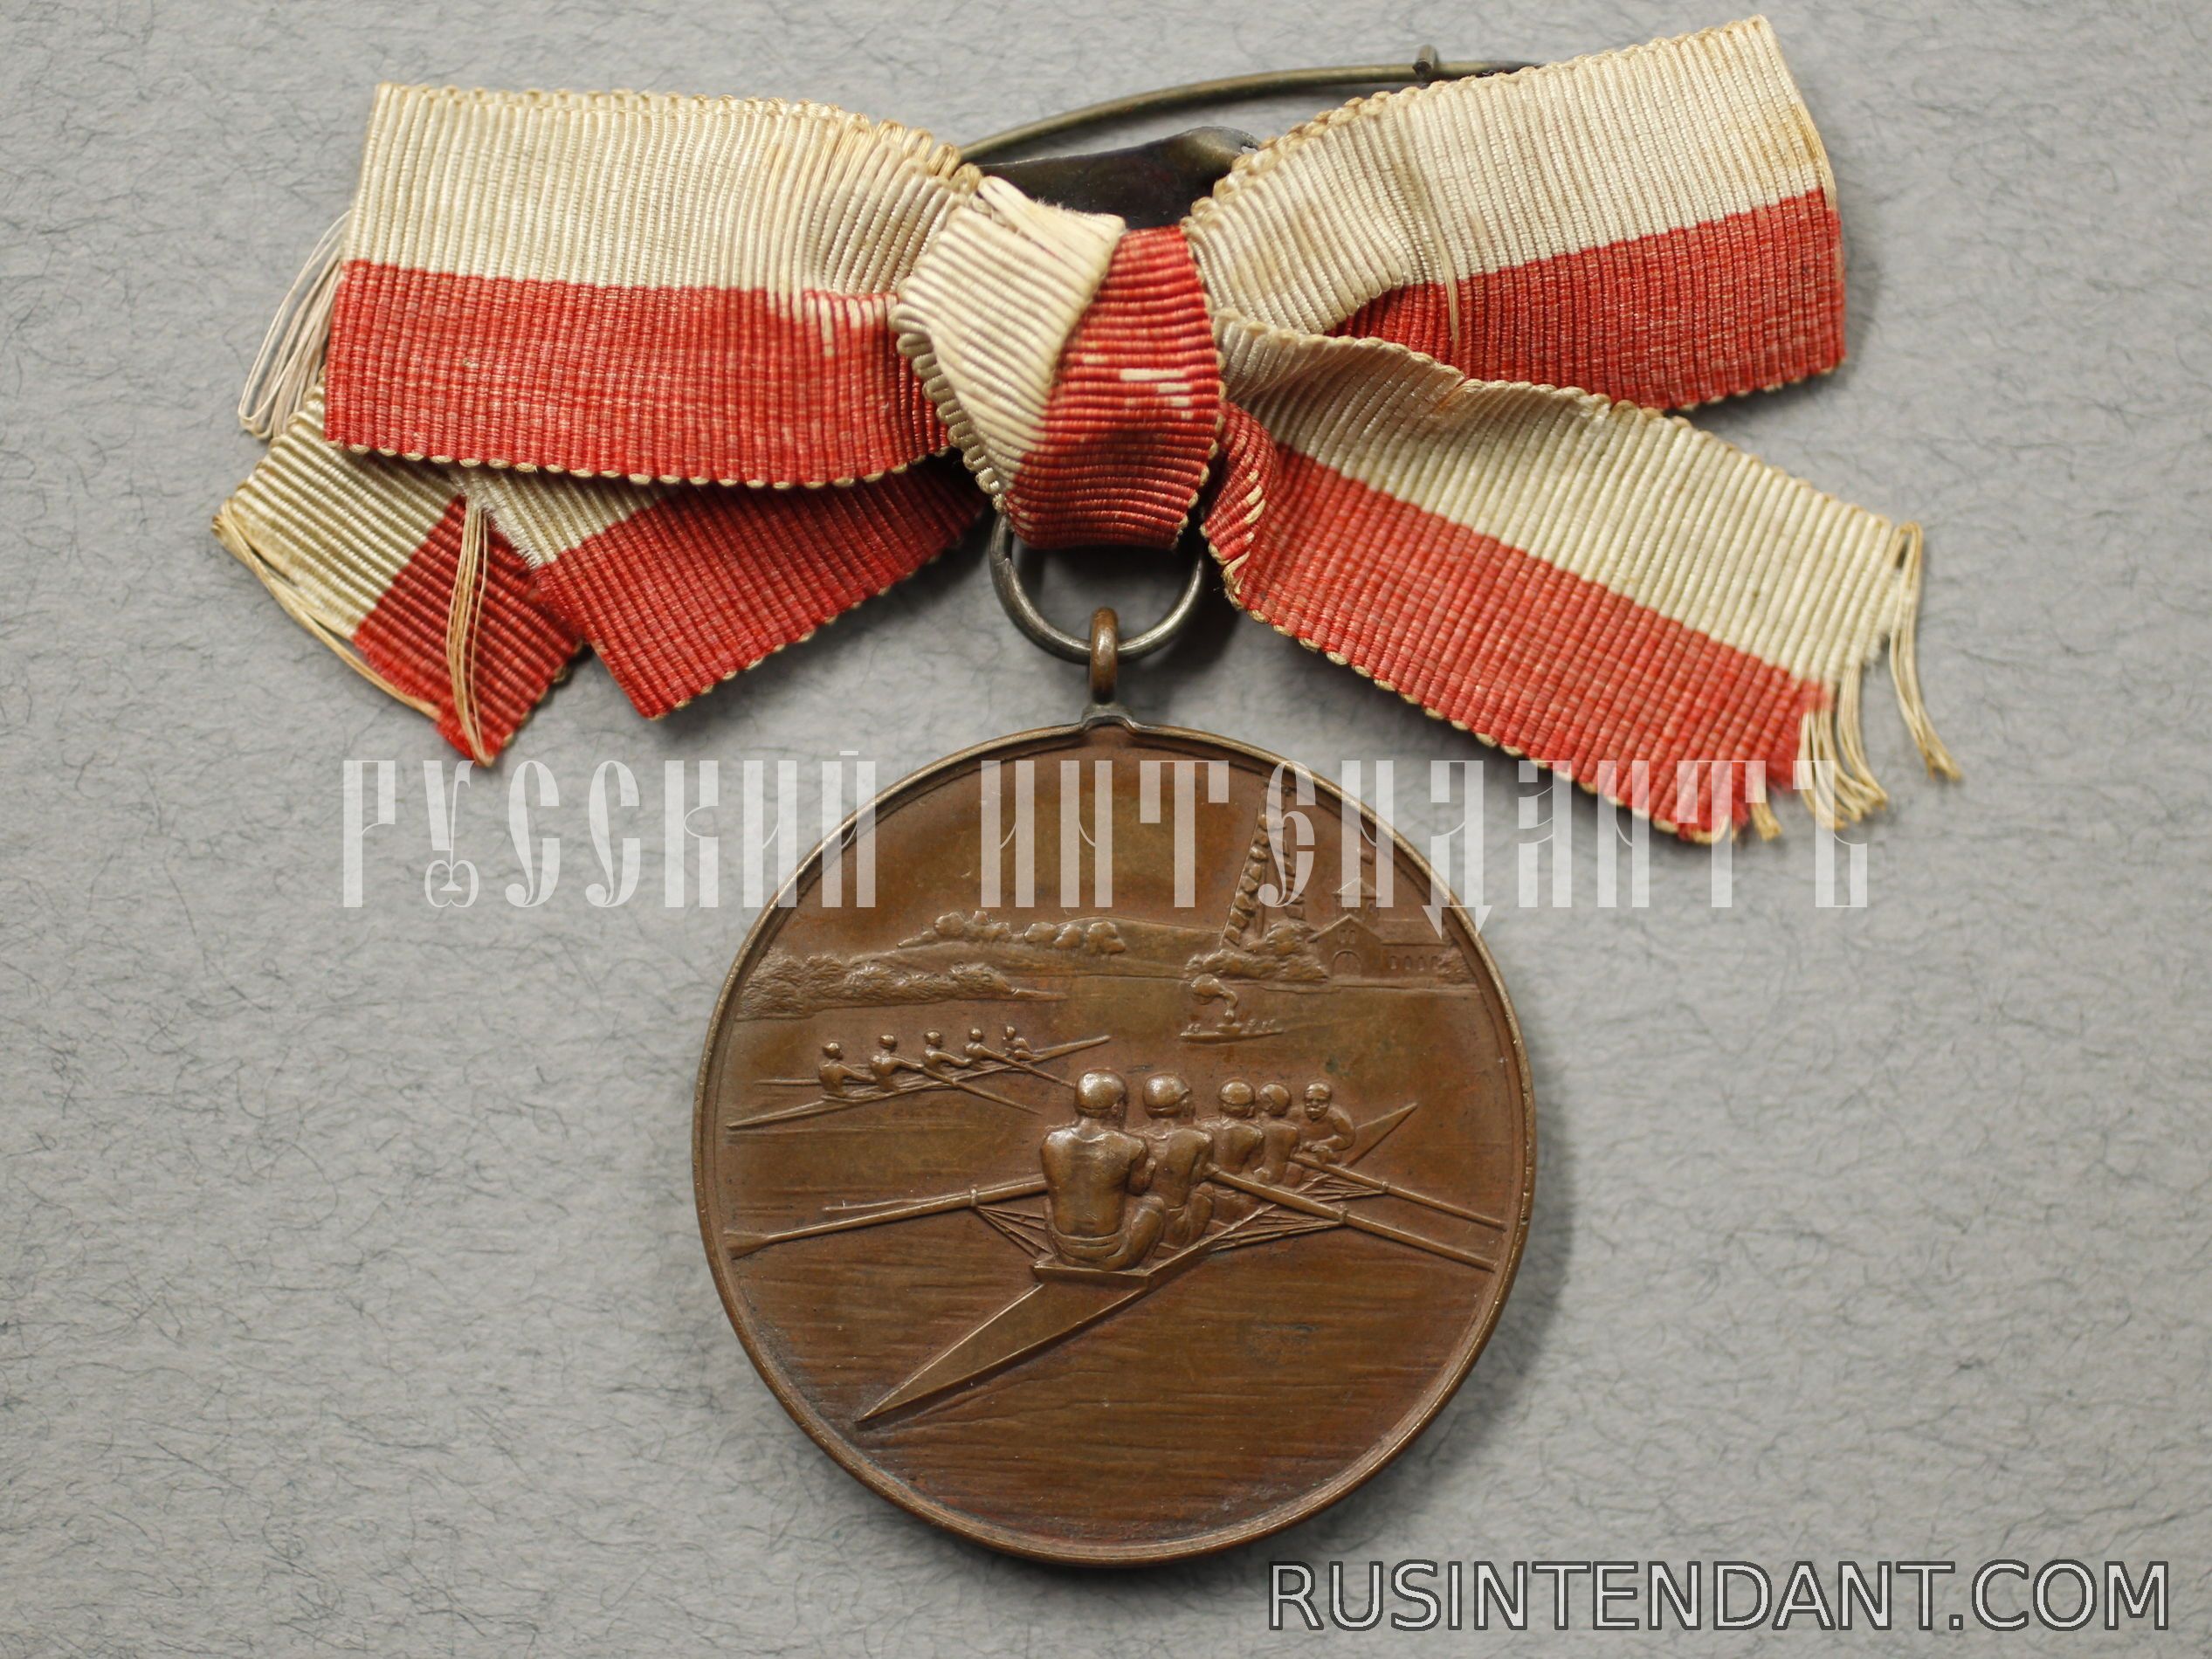 Фото 1: Бронзовая медаль Хамельнской регаты 